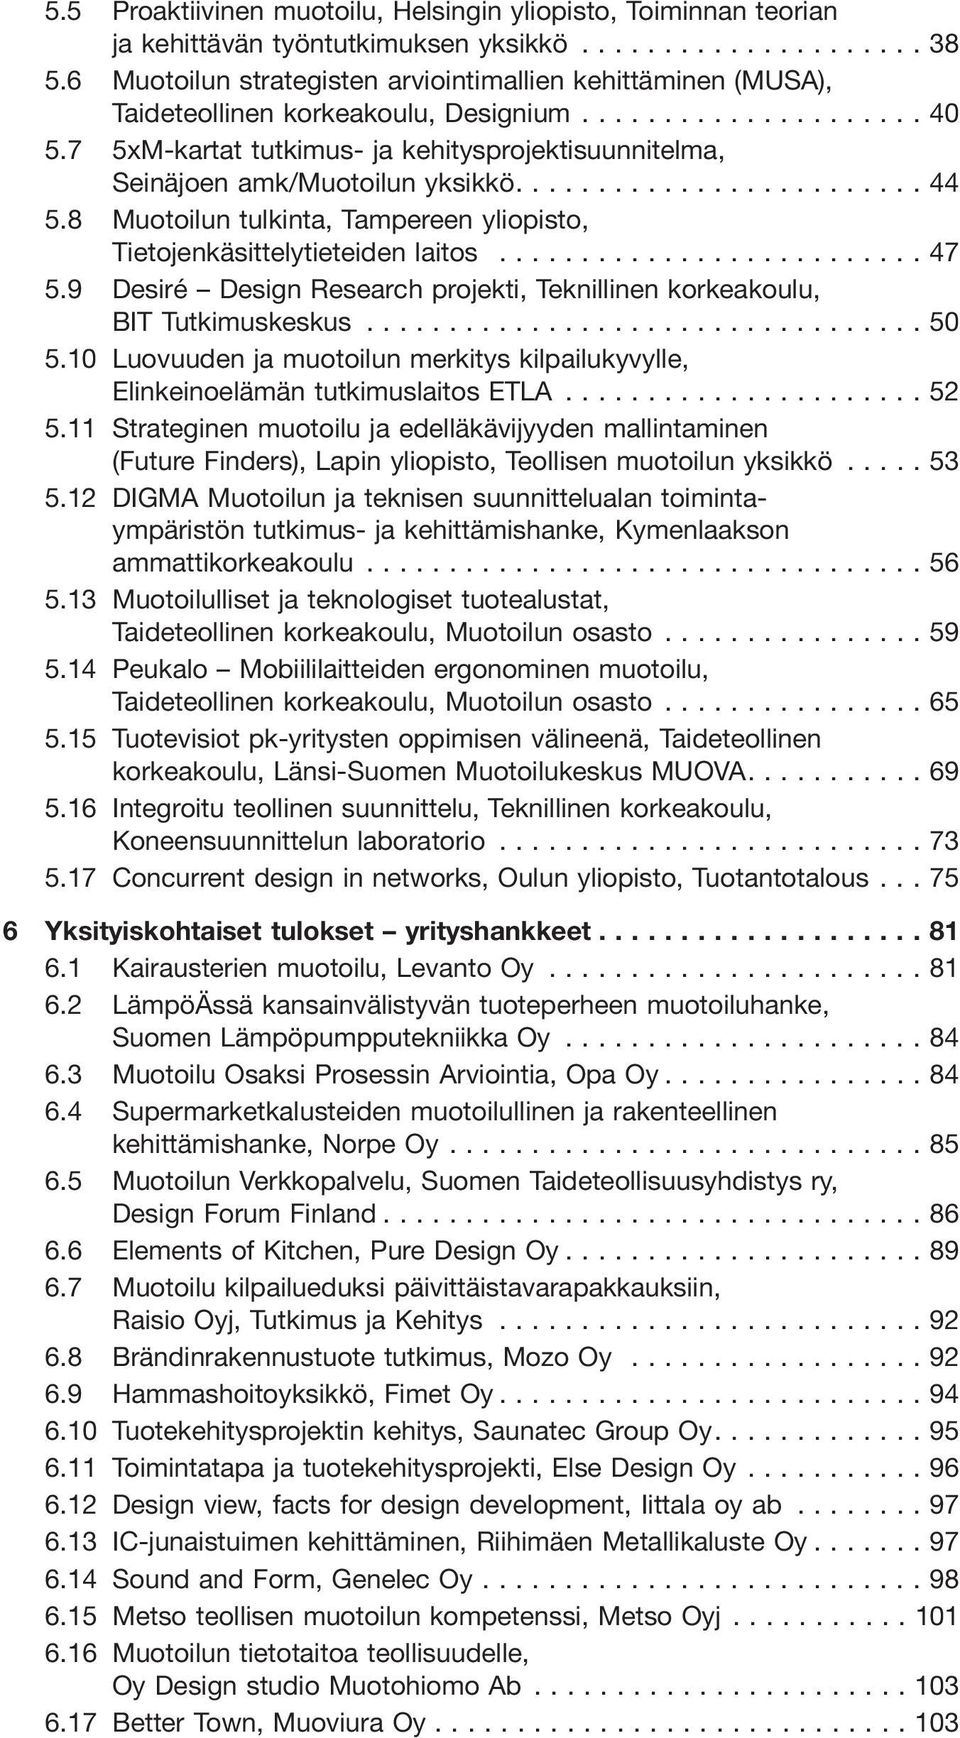 8 Muotoilun tulkinta, Tampereen yliopisto, Tietojenkäsittelytieteiden laitos...47 5.9 Desiré Design Research projekti, Teknillinen korkeakoulu, BIT Tutkimuskeskus...50 5.